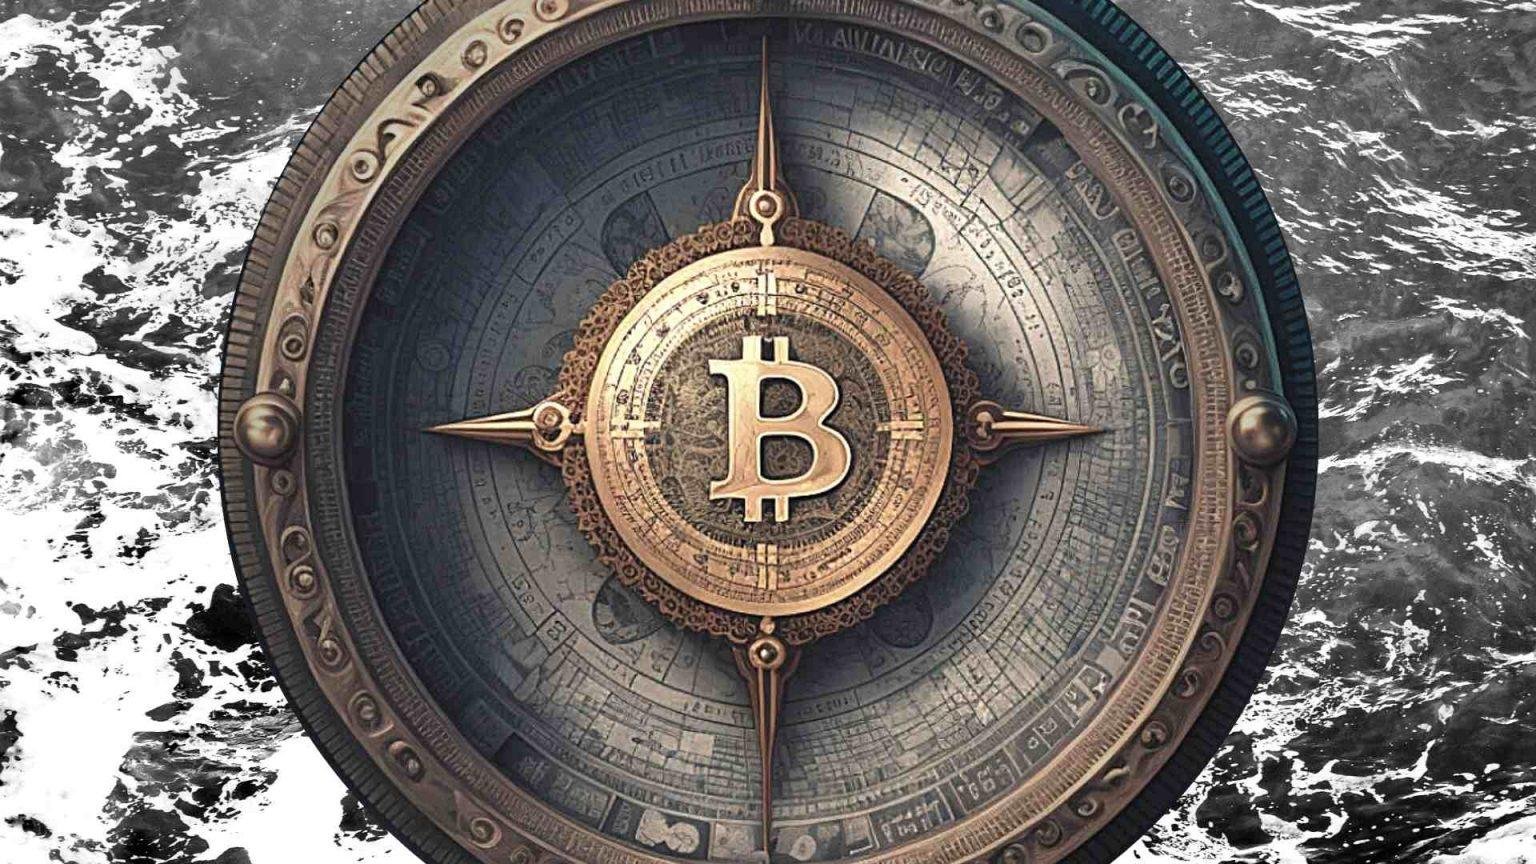 bitcoin compass